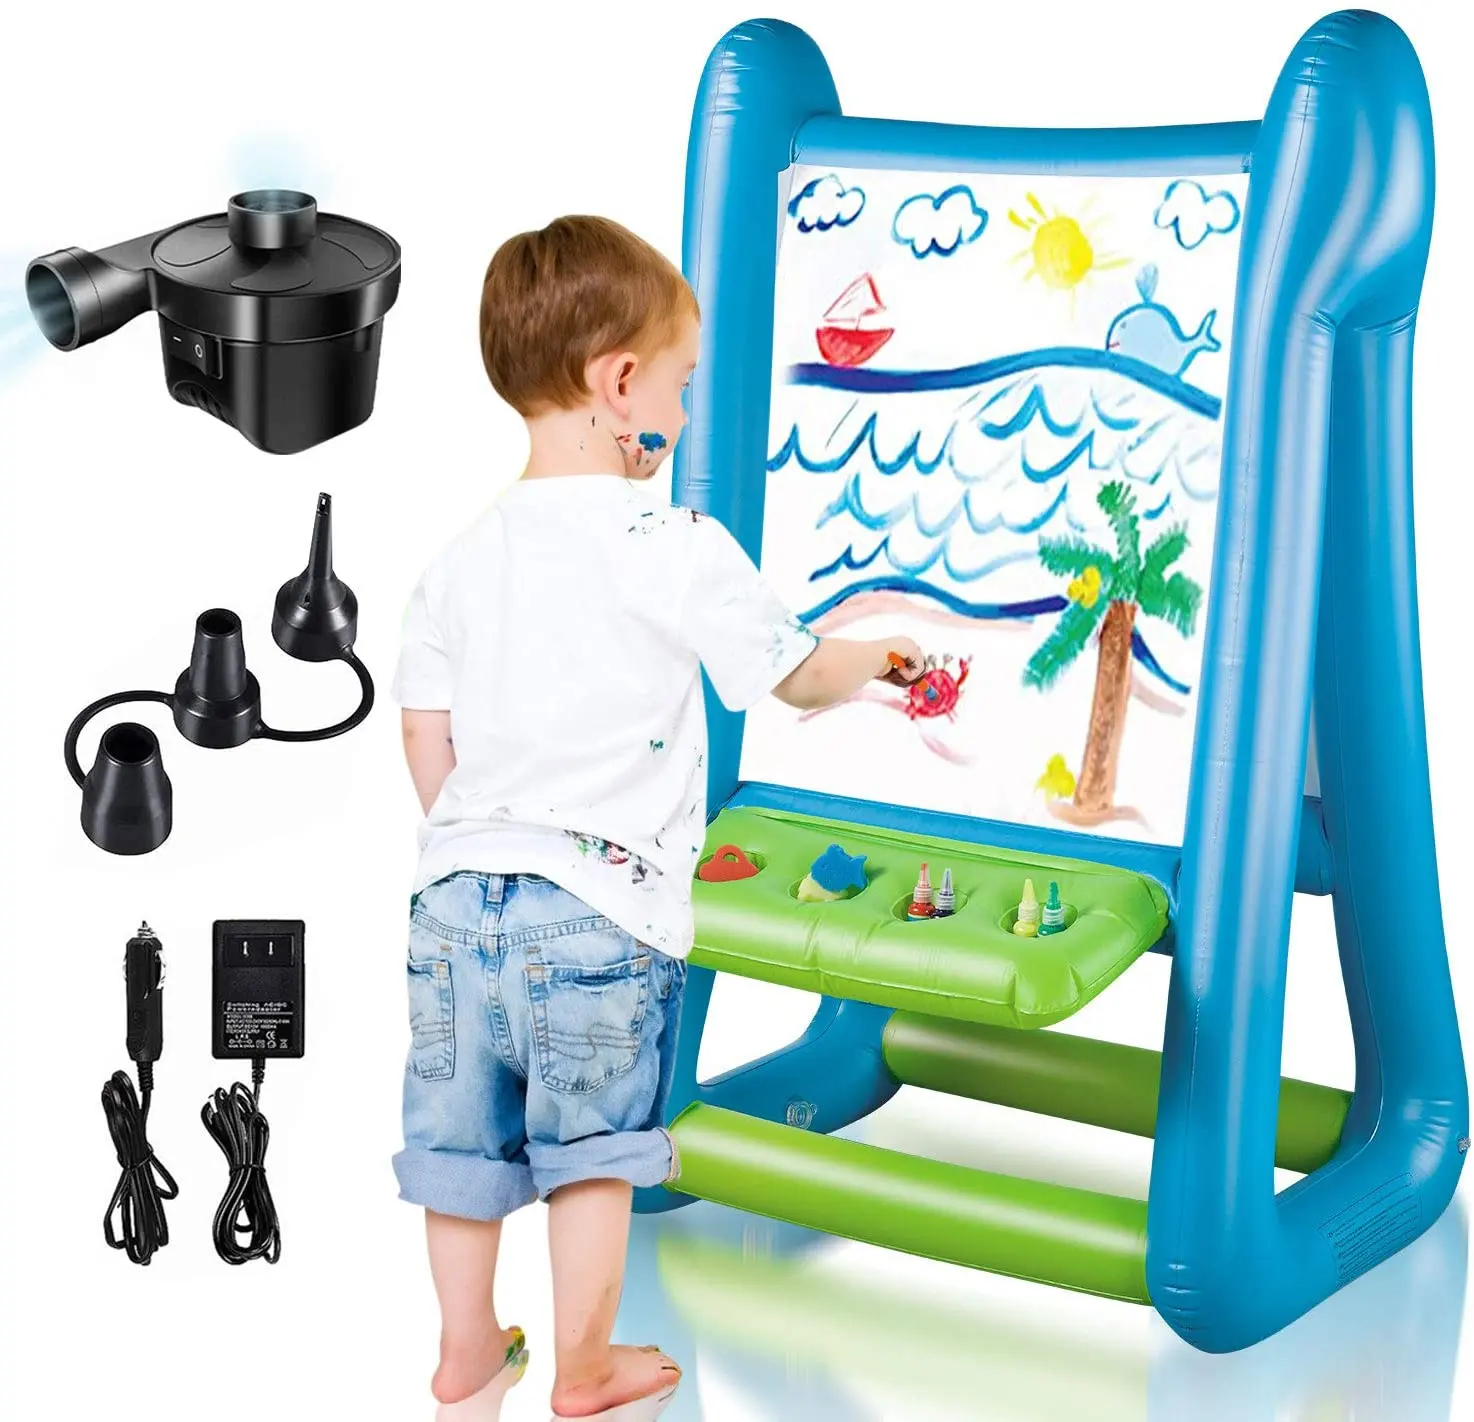 Caballete inflable lateral para exteriores/juguetes de interior para niños de 4 a 8 años con inflador y pintura para jóvenes artistas regalos para niños y niñas